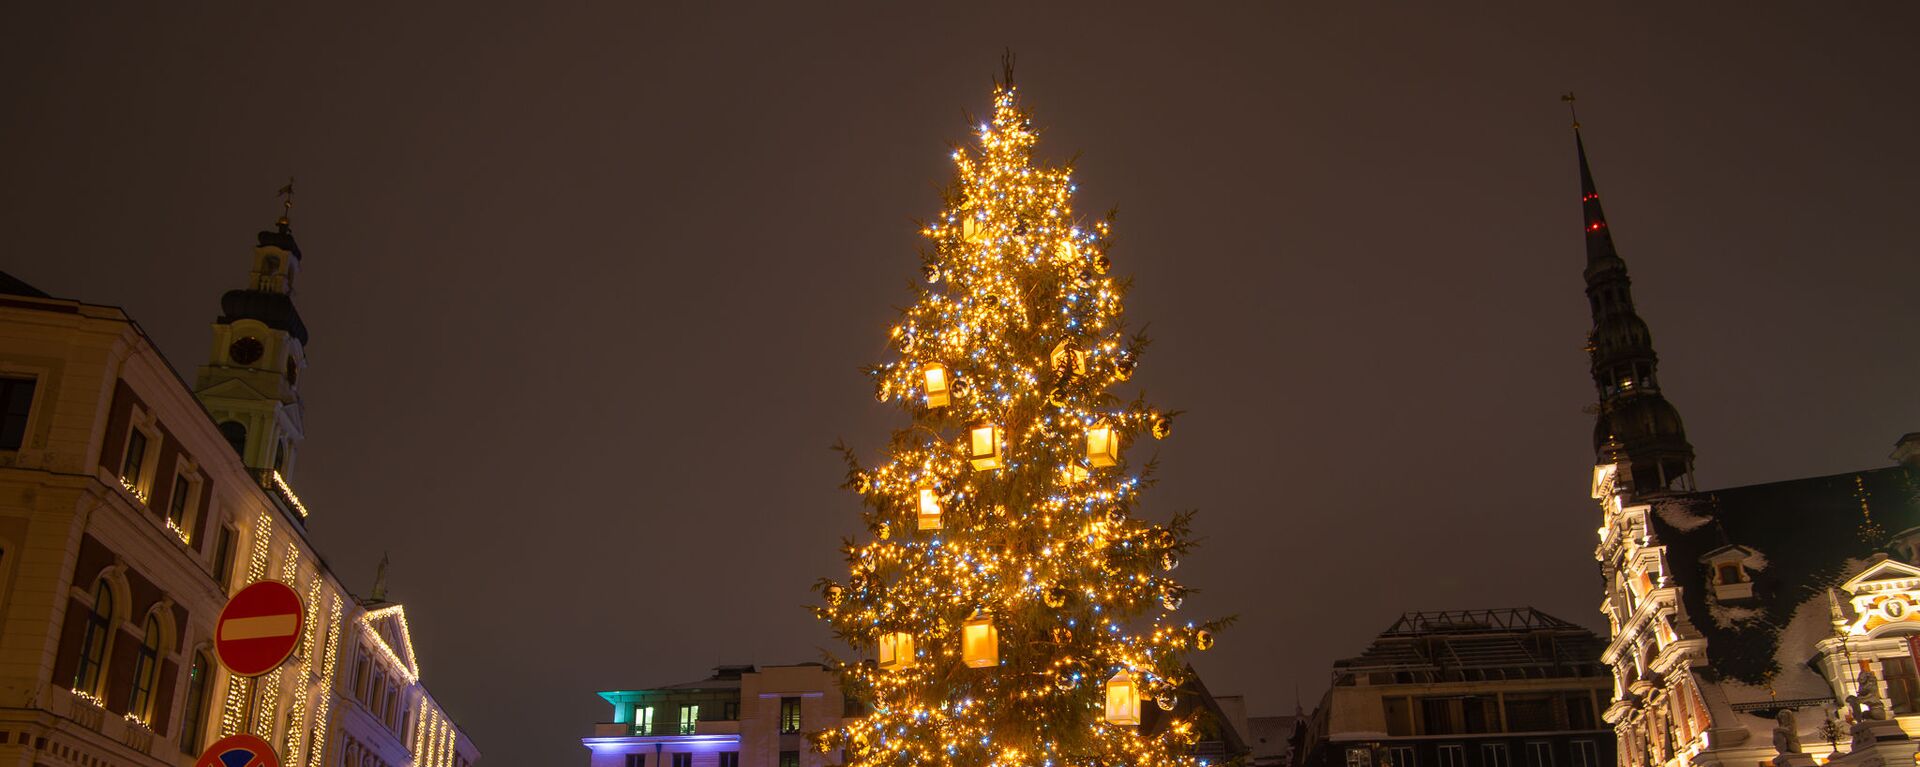 Рождественская елка на Ратушной площади в Риге - Sputnik Латвия, 1920, 17.11.2021